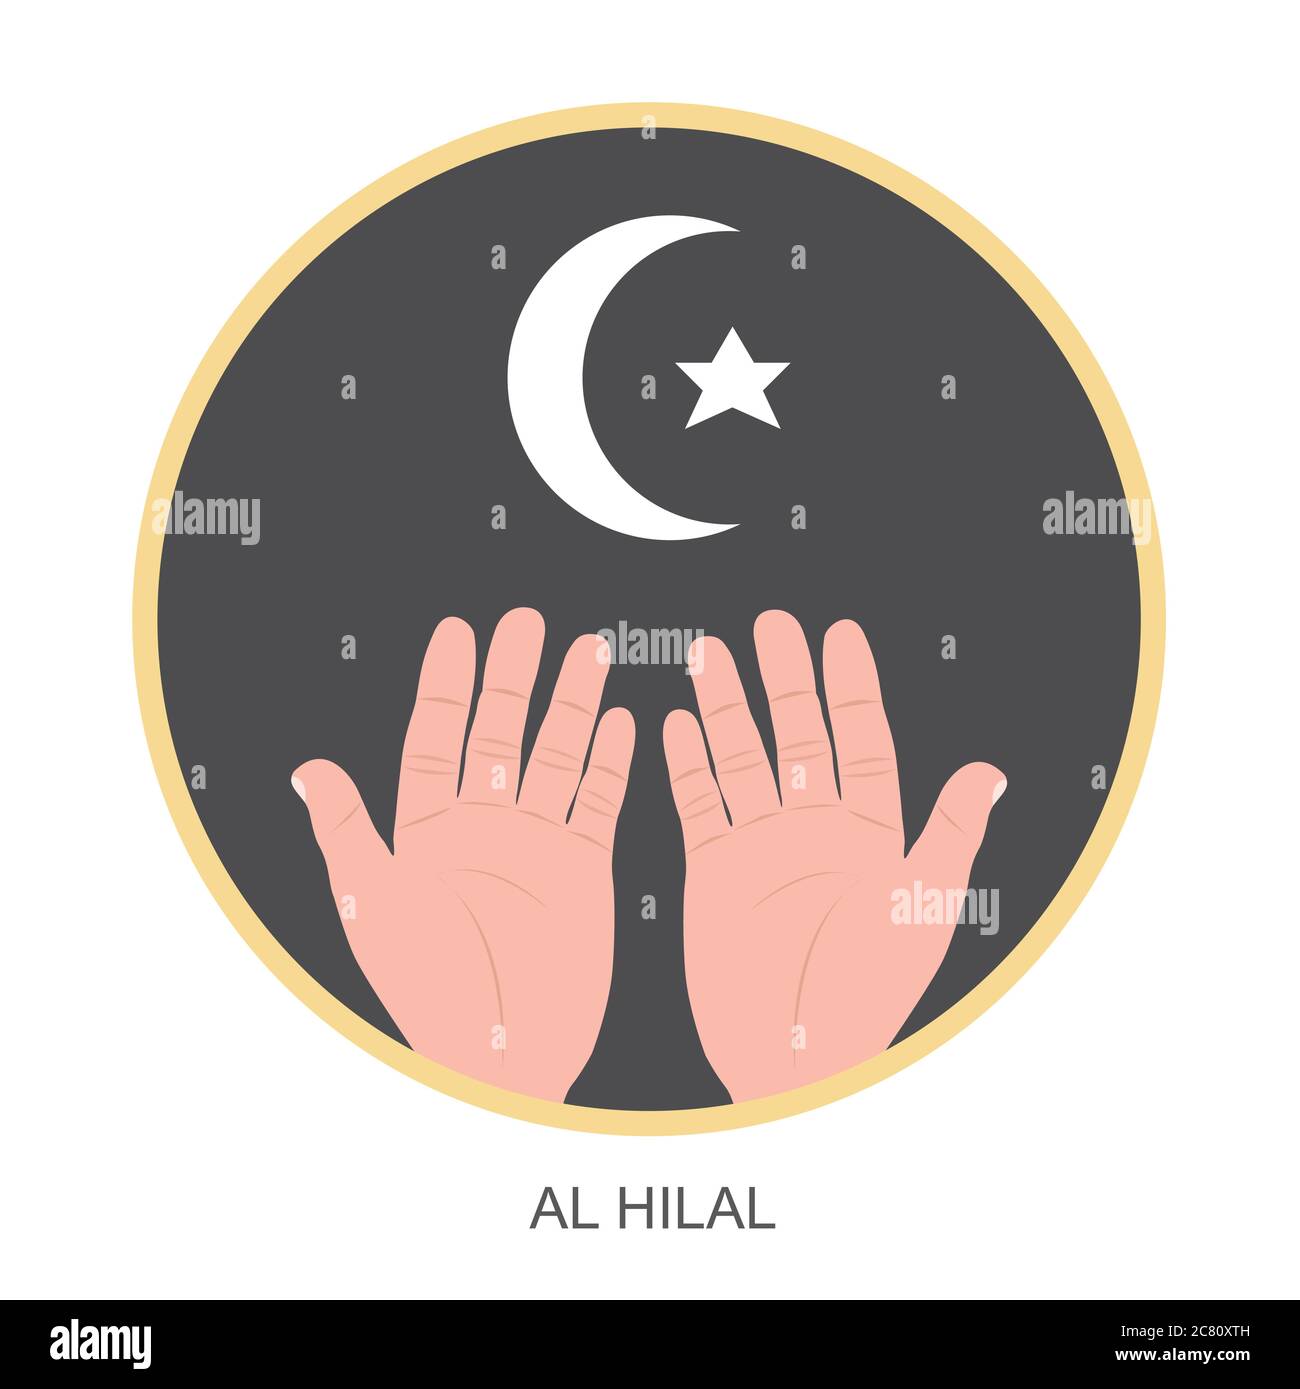 La Luna di Crescent e la Stella al Hilal simbolico. Il quadro della luna crescente, una stella e la forma del palmo di due mani spiegano tutta la rilevanza per l'Islam. Illustrazione Vettoriale